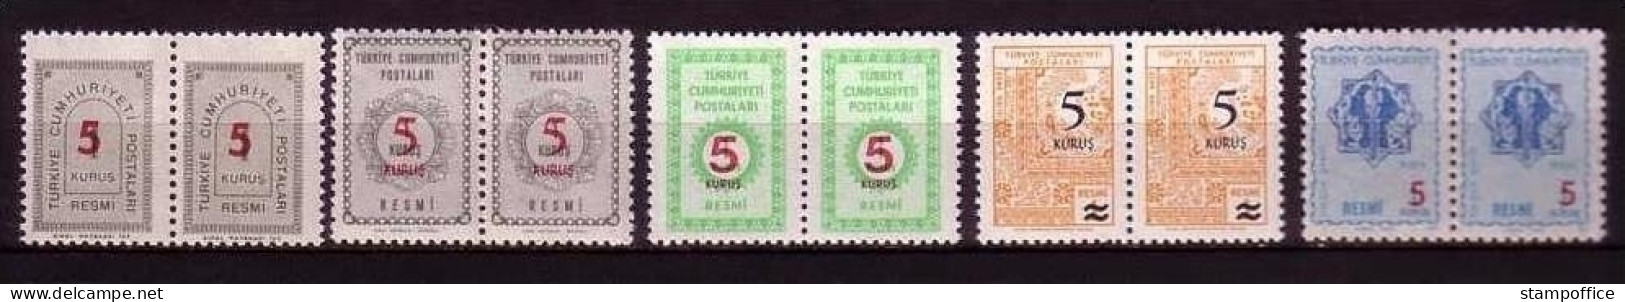 TÜRKEI DIENSTMARKEN MI-NR. 141-145 POSTFRISCH(MINT) Pärchen FRÜHERE AUSGABEN MIT AUFDRUCK - Official Stamps